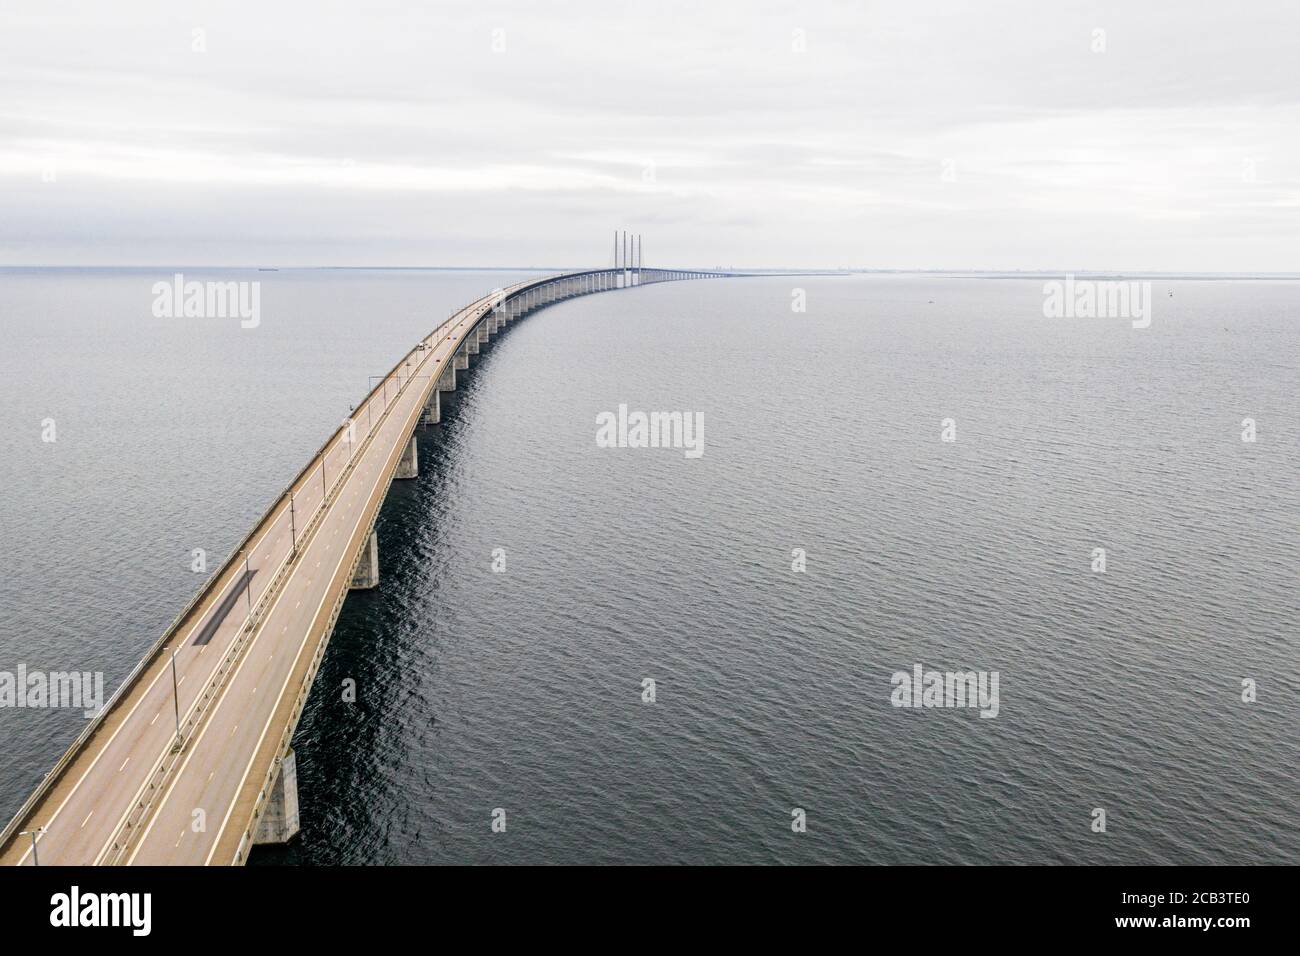 Landschaftlich reizvolle Luftaufnahme der Öresundbrücke über den Öresund  straße, die Schweden und Dänemark verbindet Stockfotografie - Alamy